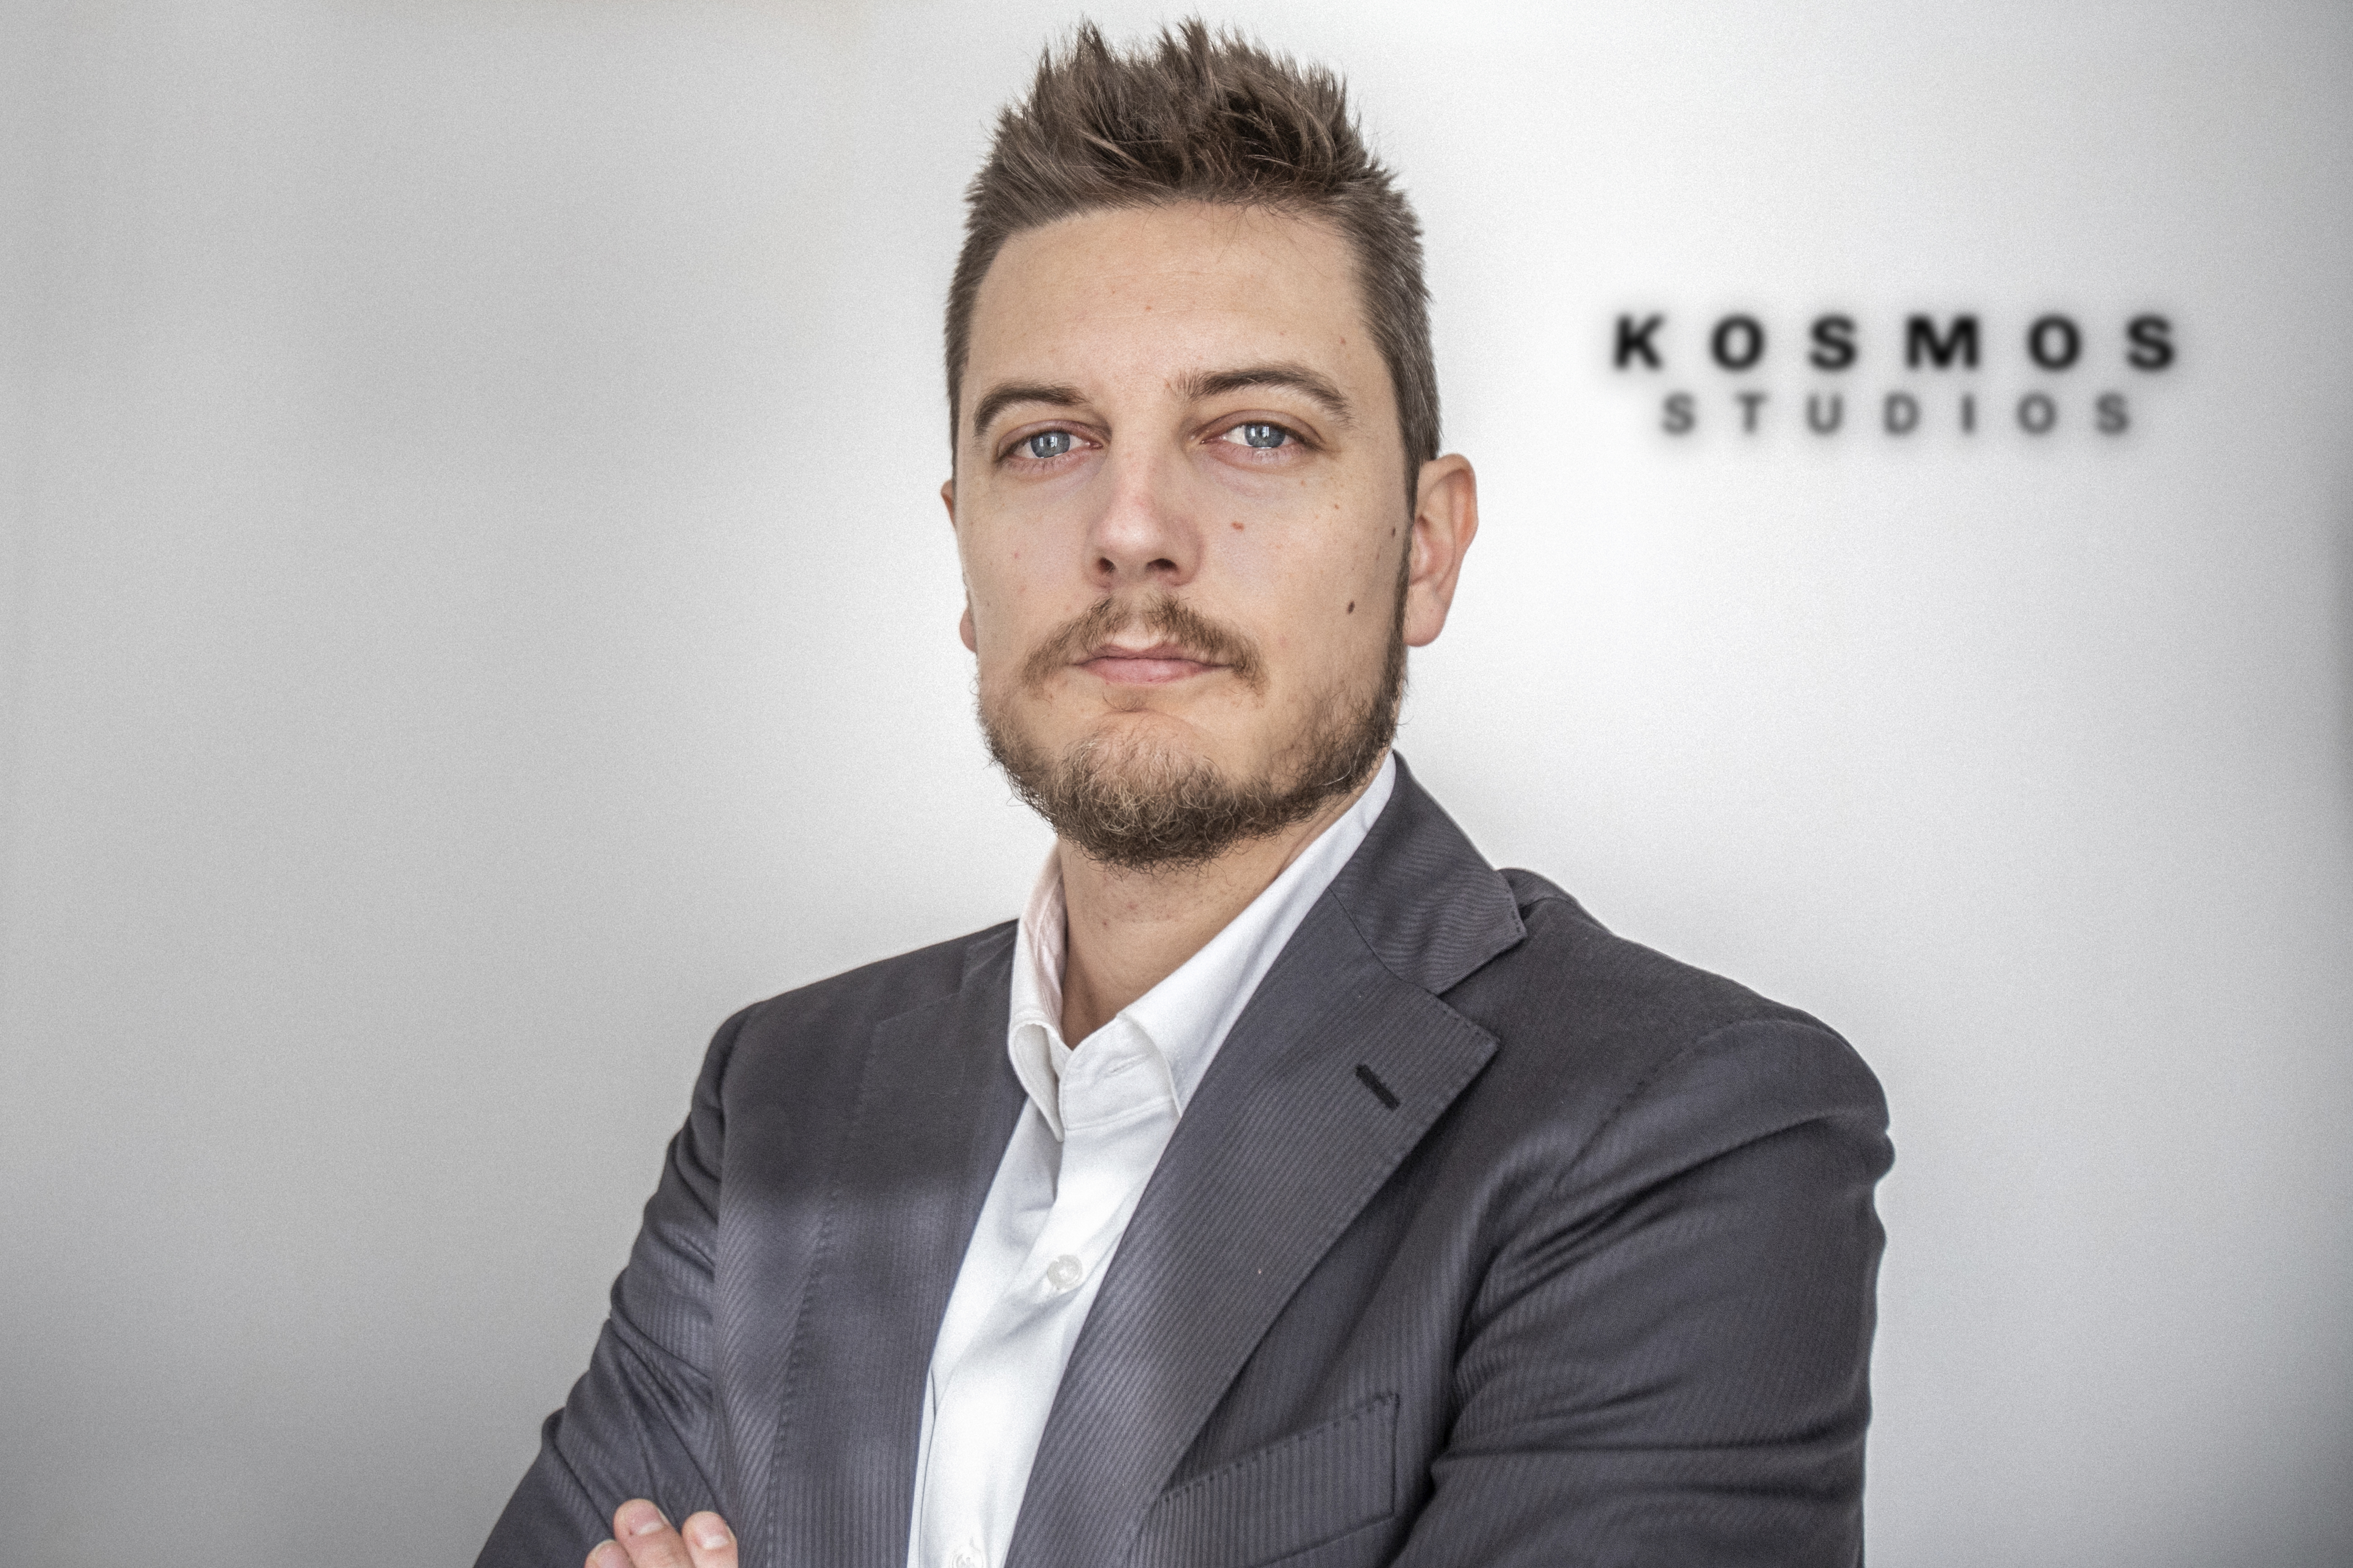 Oriol Querol, new Managing Director of Kosmos Studios.